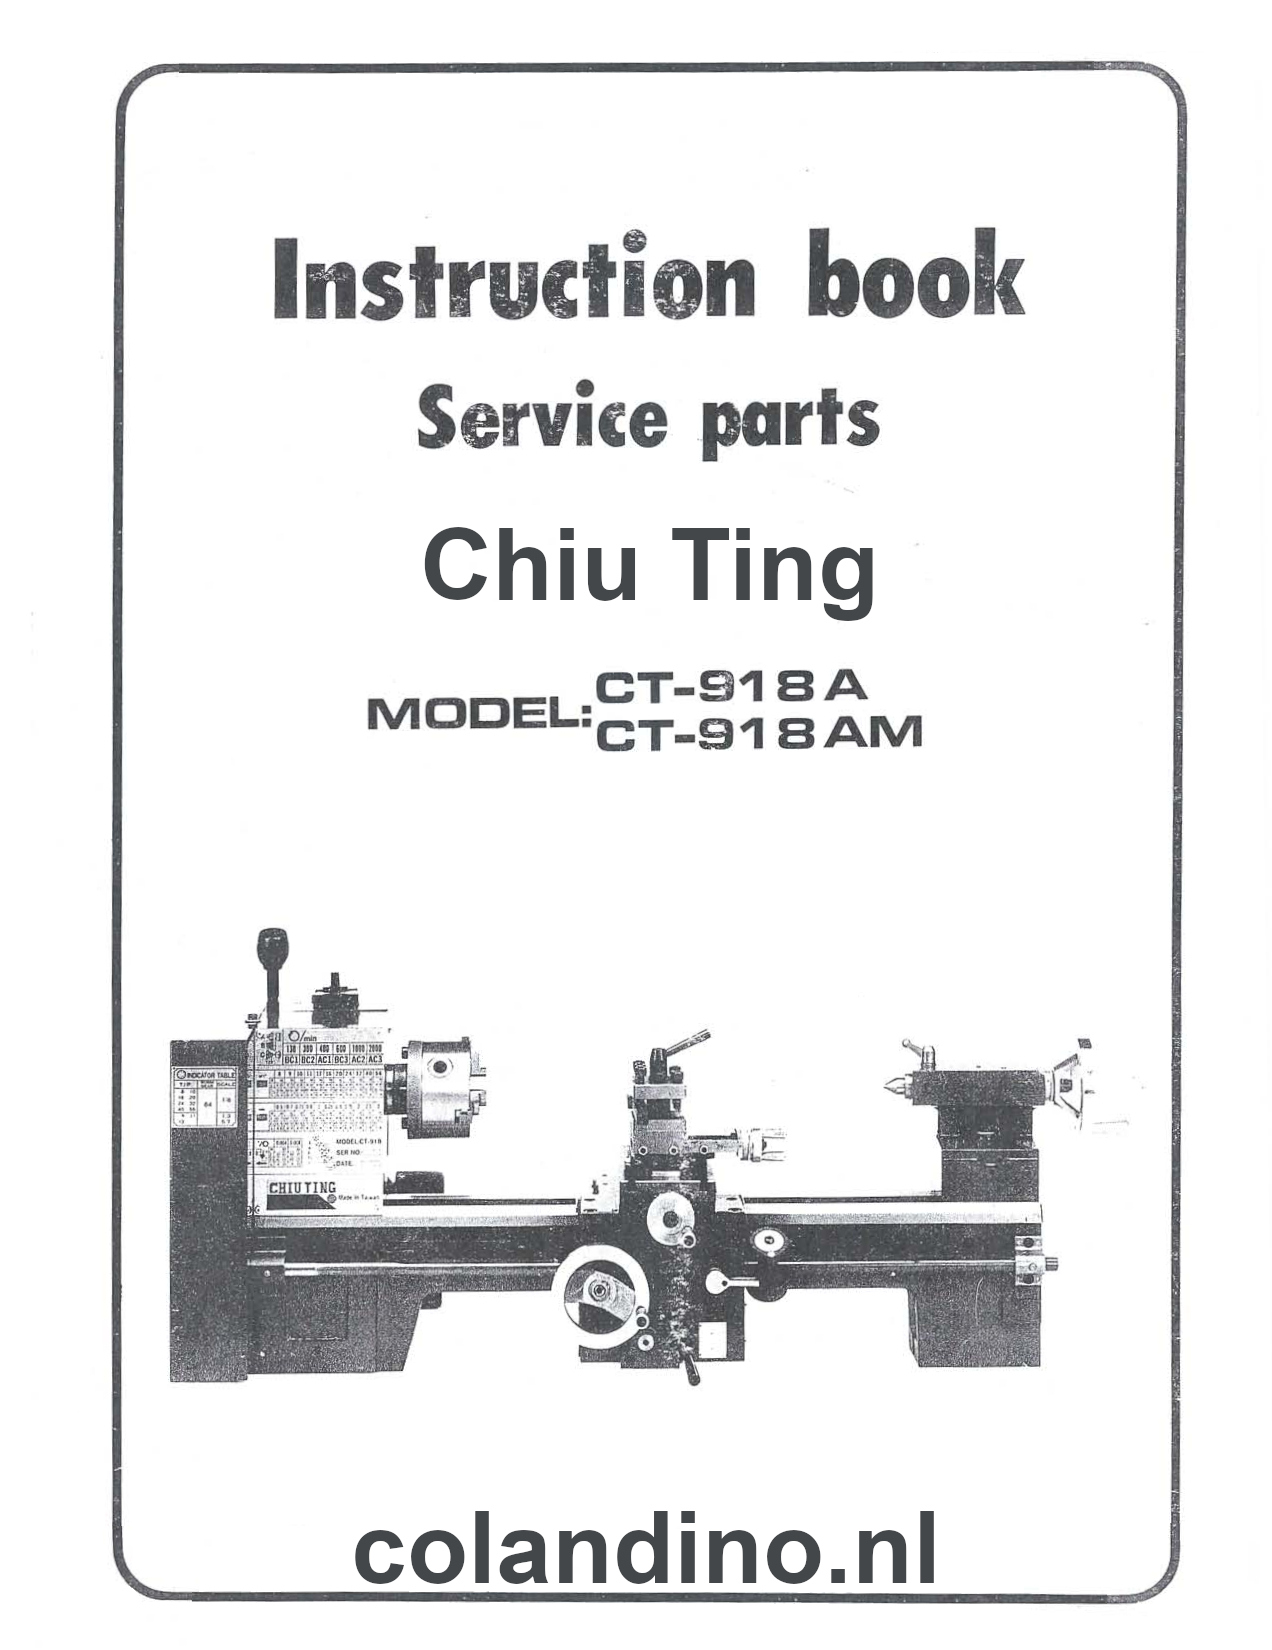 Manual Chiu Ting CT-918 AM lathe draaibank Taiwan